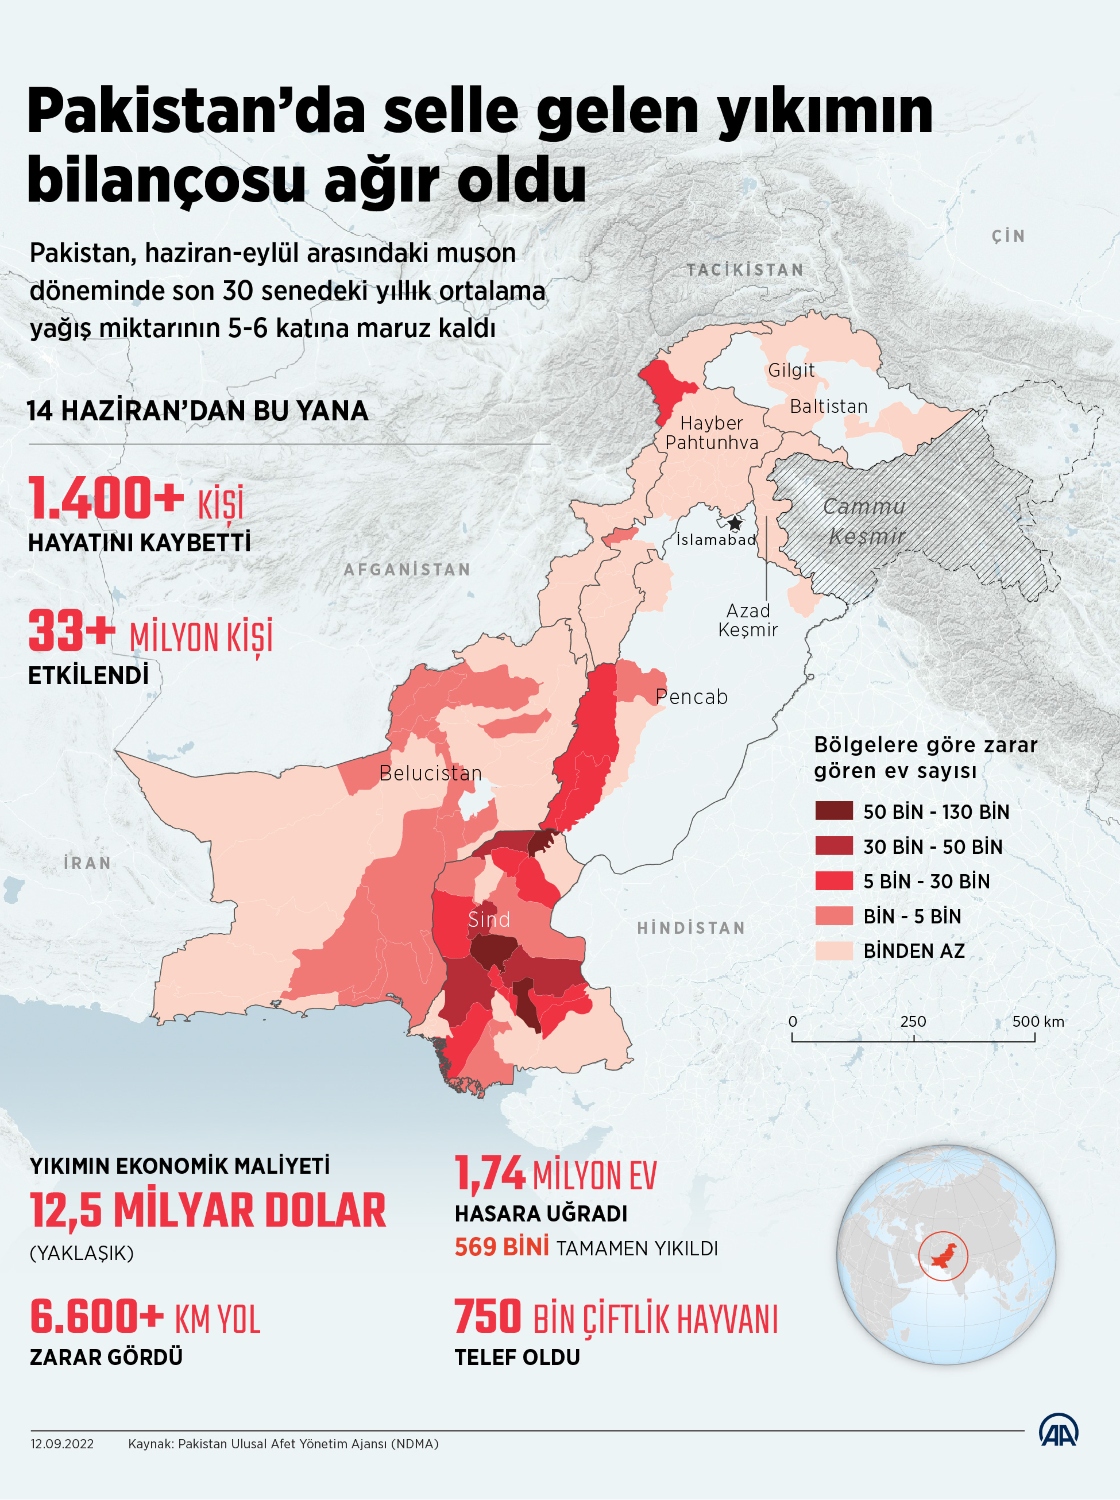 Pakistan’da selle gelen yıkımın bilançosu ağır oldu